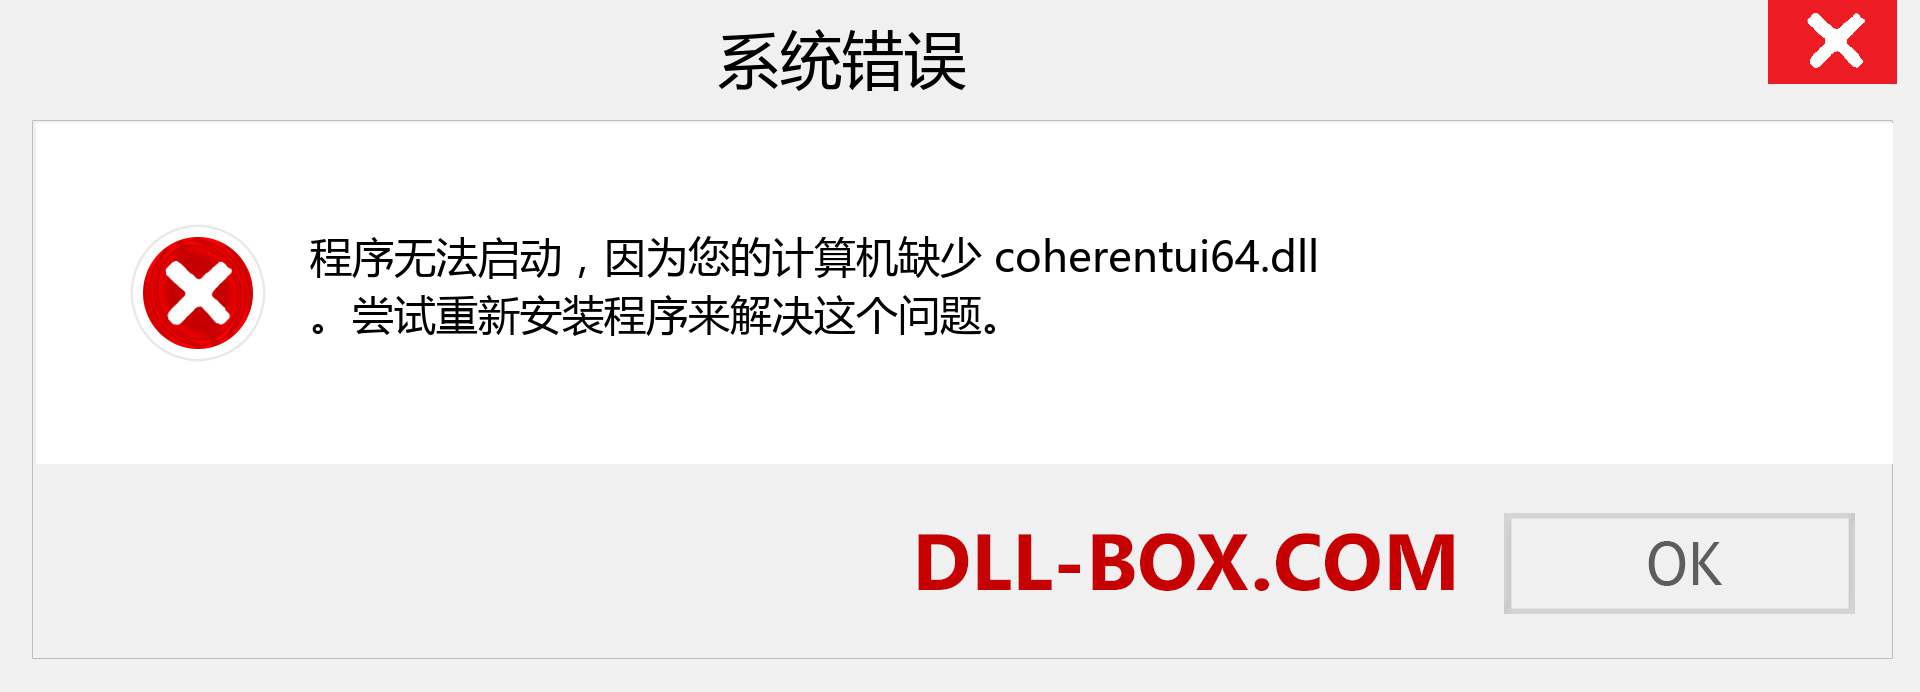 coherentui64.dll 文件丢失？。 适用于 Windows 7、8、10 的下载 - 修复 Windows、照片、图像上的 coherentui64 dll 丢失错误